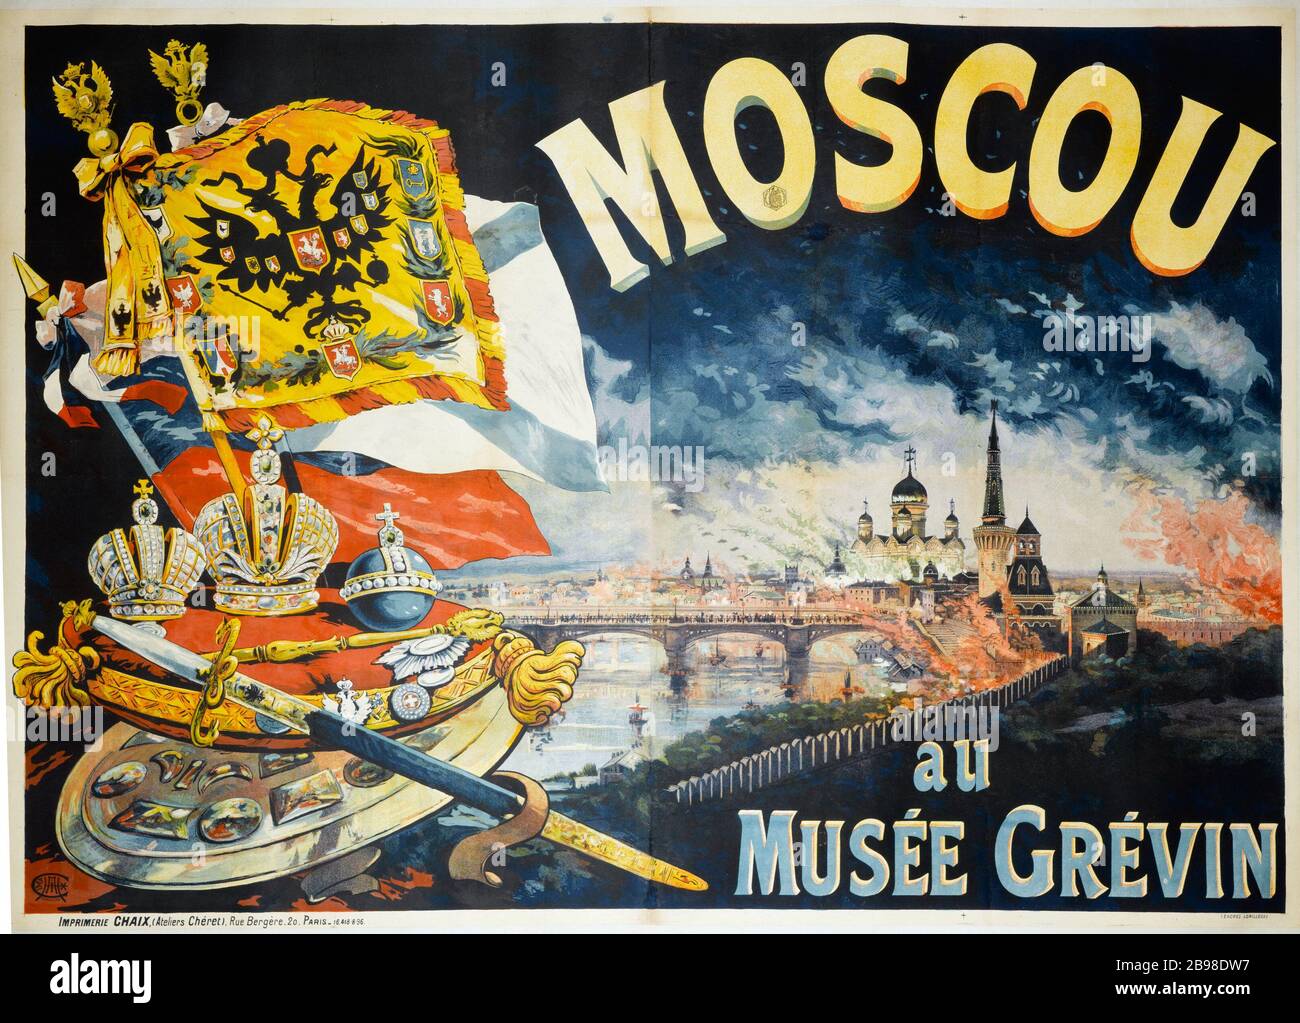 MOSCA AL MUSEO GREVIN Imprimerie Chaix. Moscou au Musée Grévin. Affiche. Lithographie couleur, 1896. Parigi, musée Carnavalet. Foto Stock